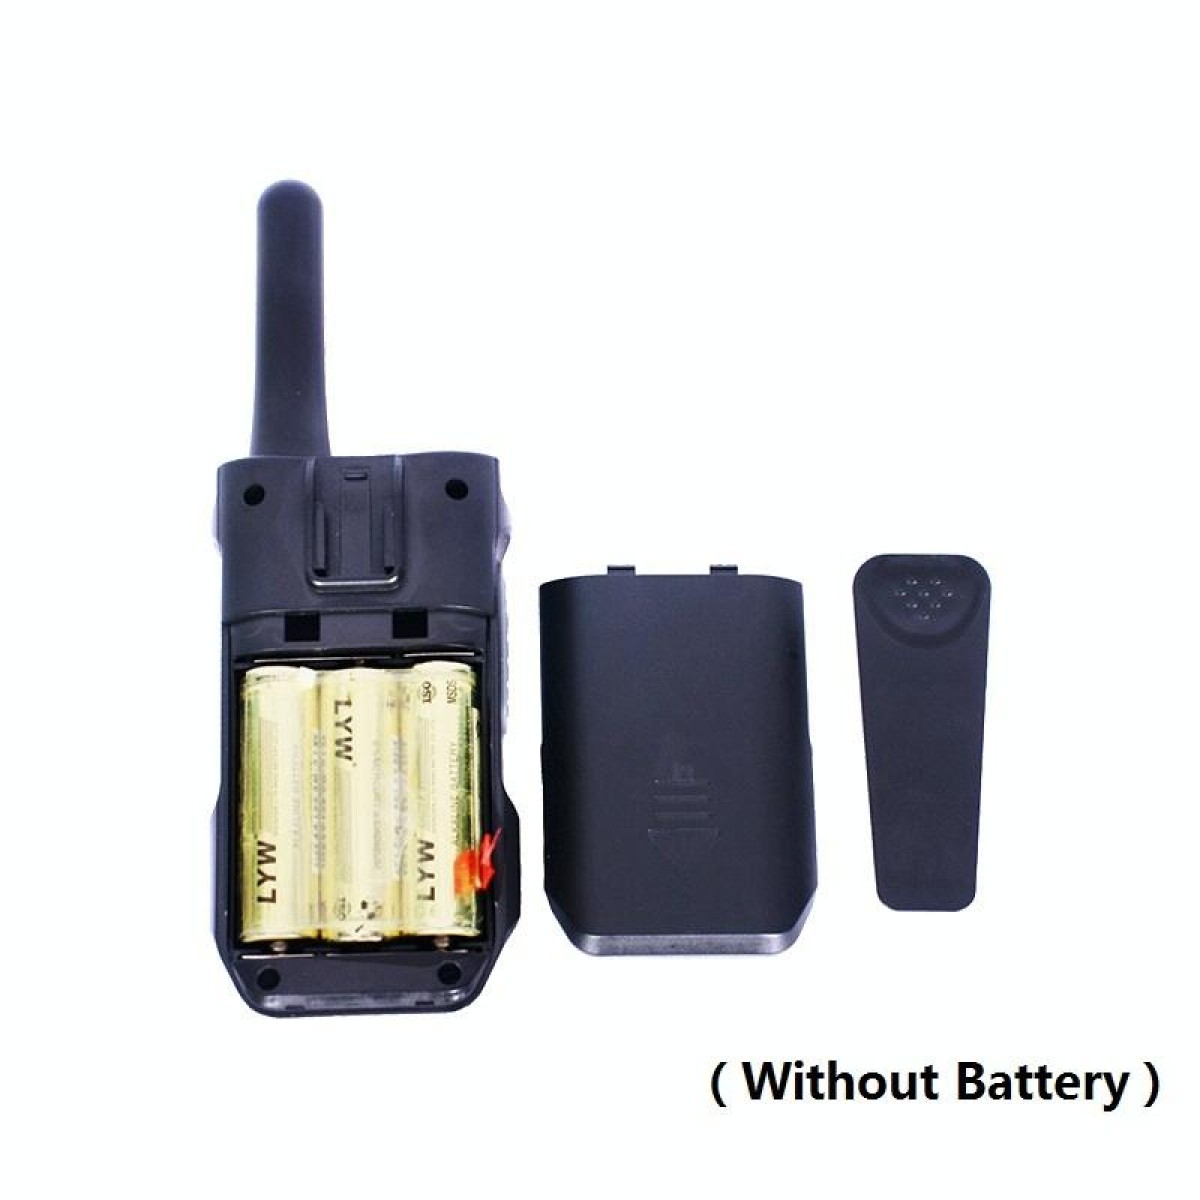 1 Pair YG-811 0.5W Children Handheld Wireless Walkie-Talkie Random Colour Delivery